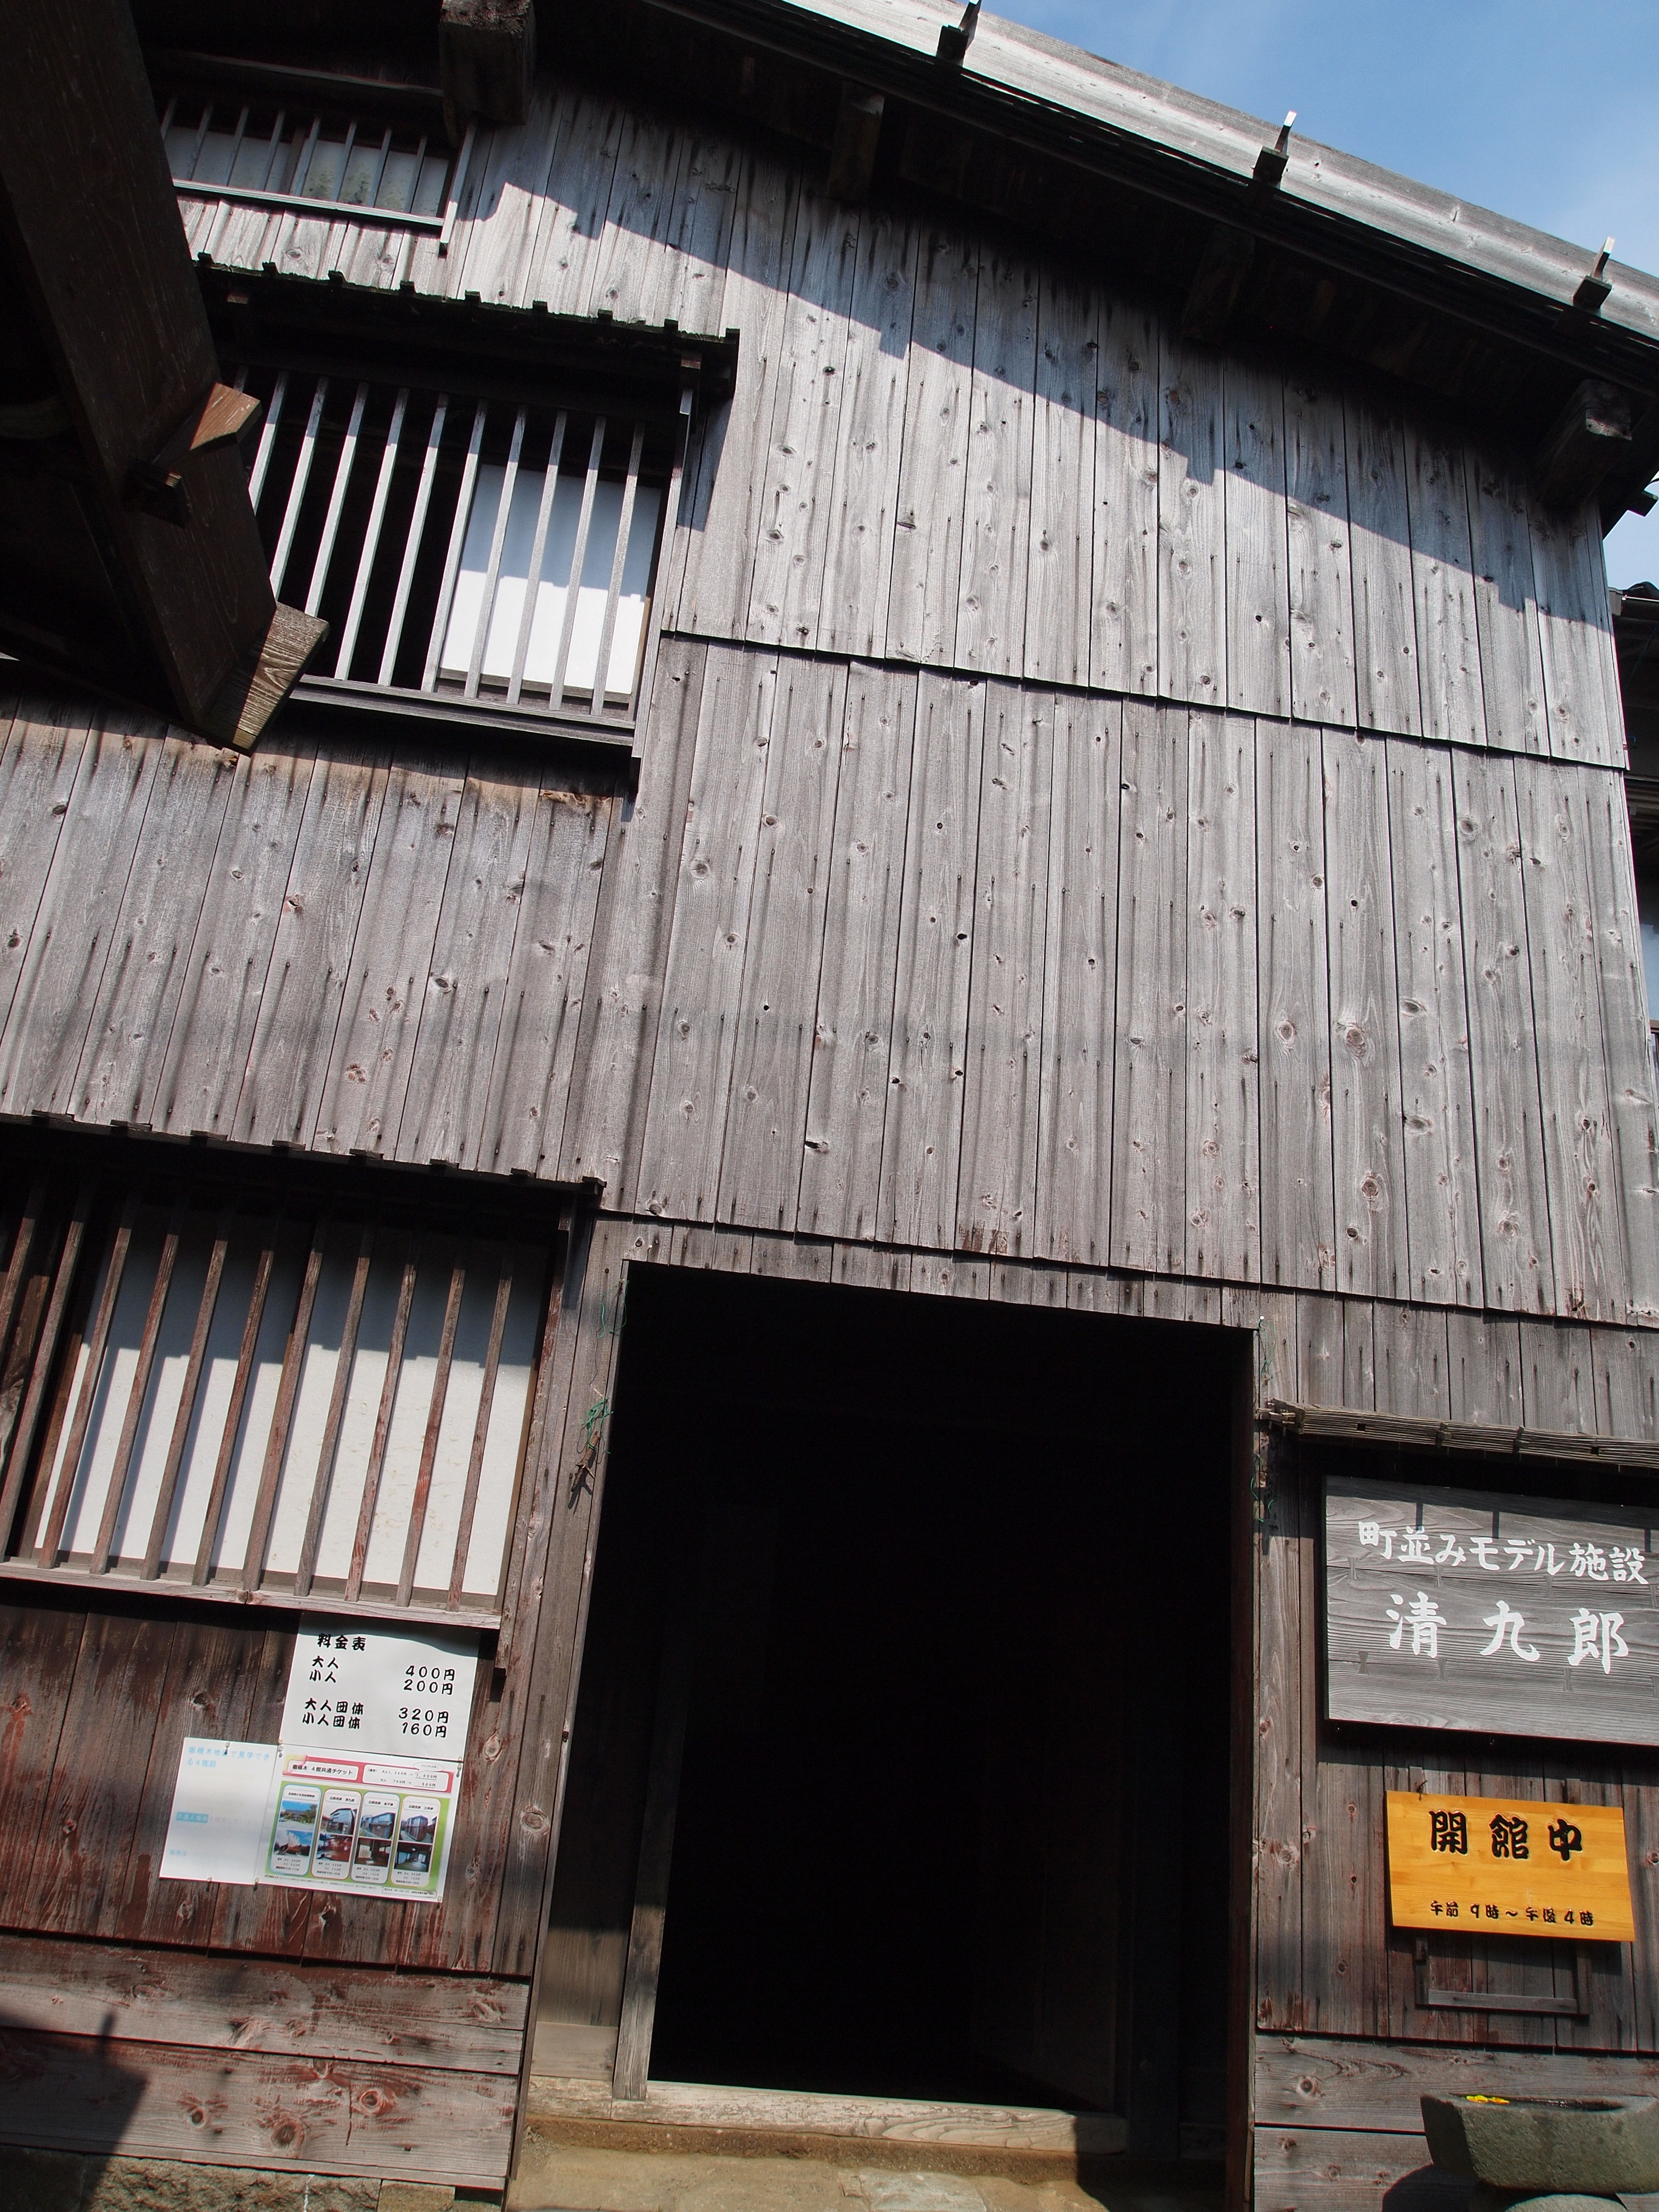 小木富甲一方的船主清九郎的宅邸，现已开放供旅客参观。